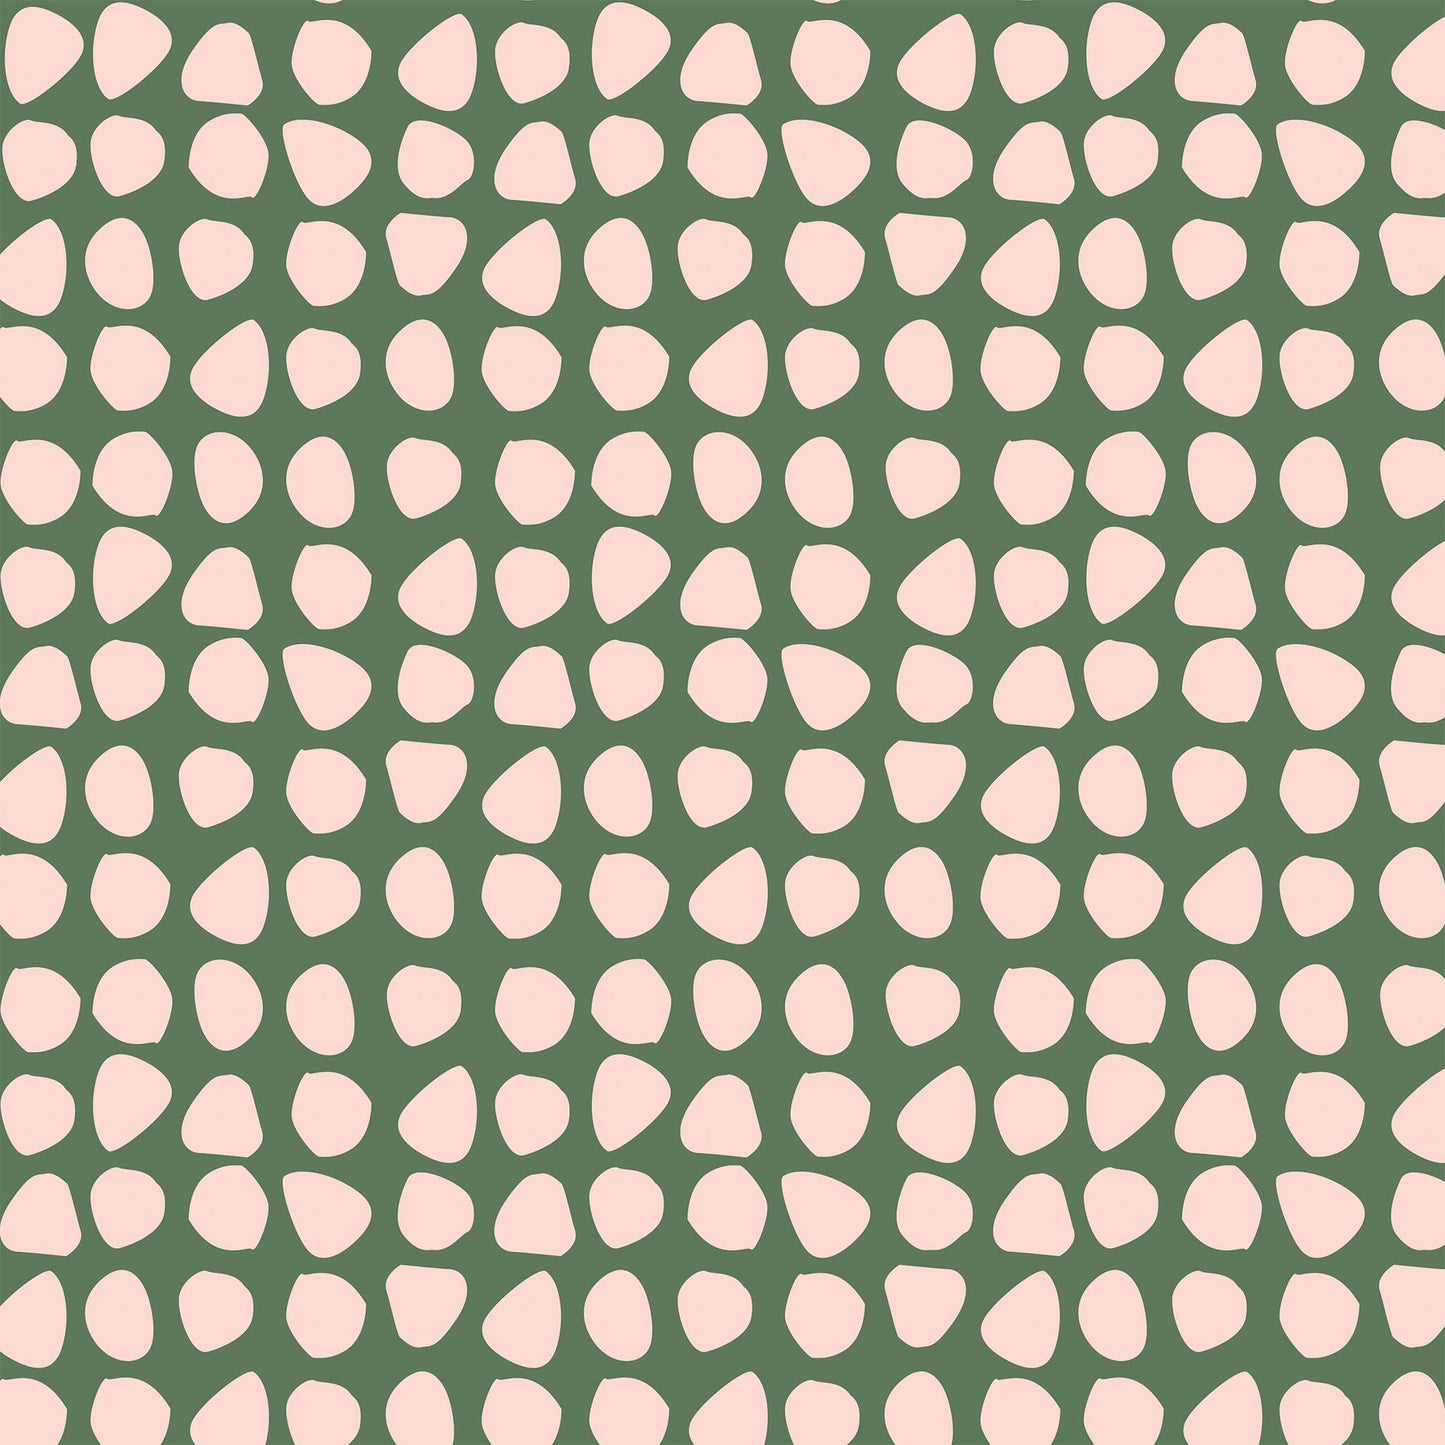 Closeup view of Organic Dots Wallpaper in Green by artist Brenda Bird